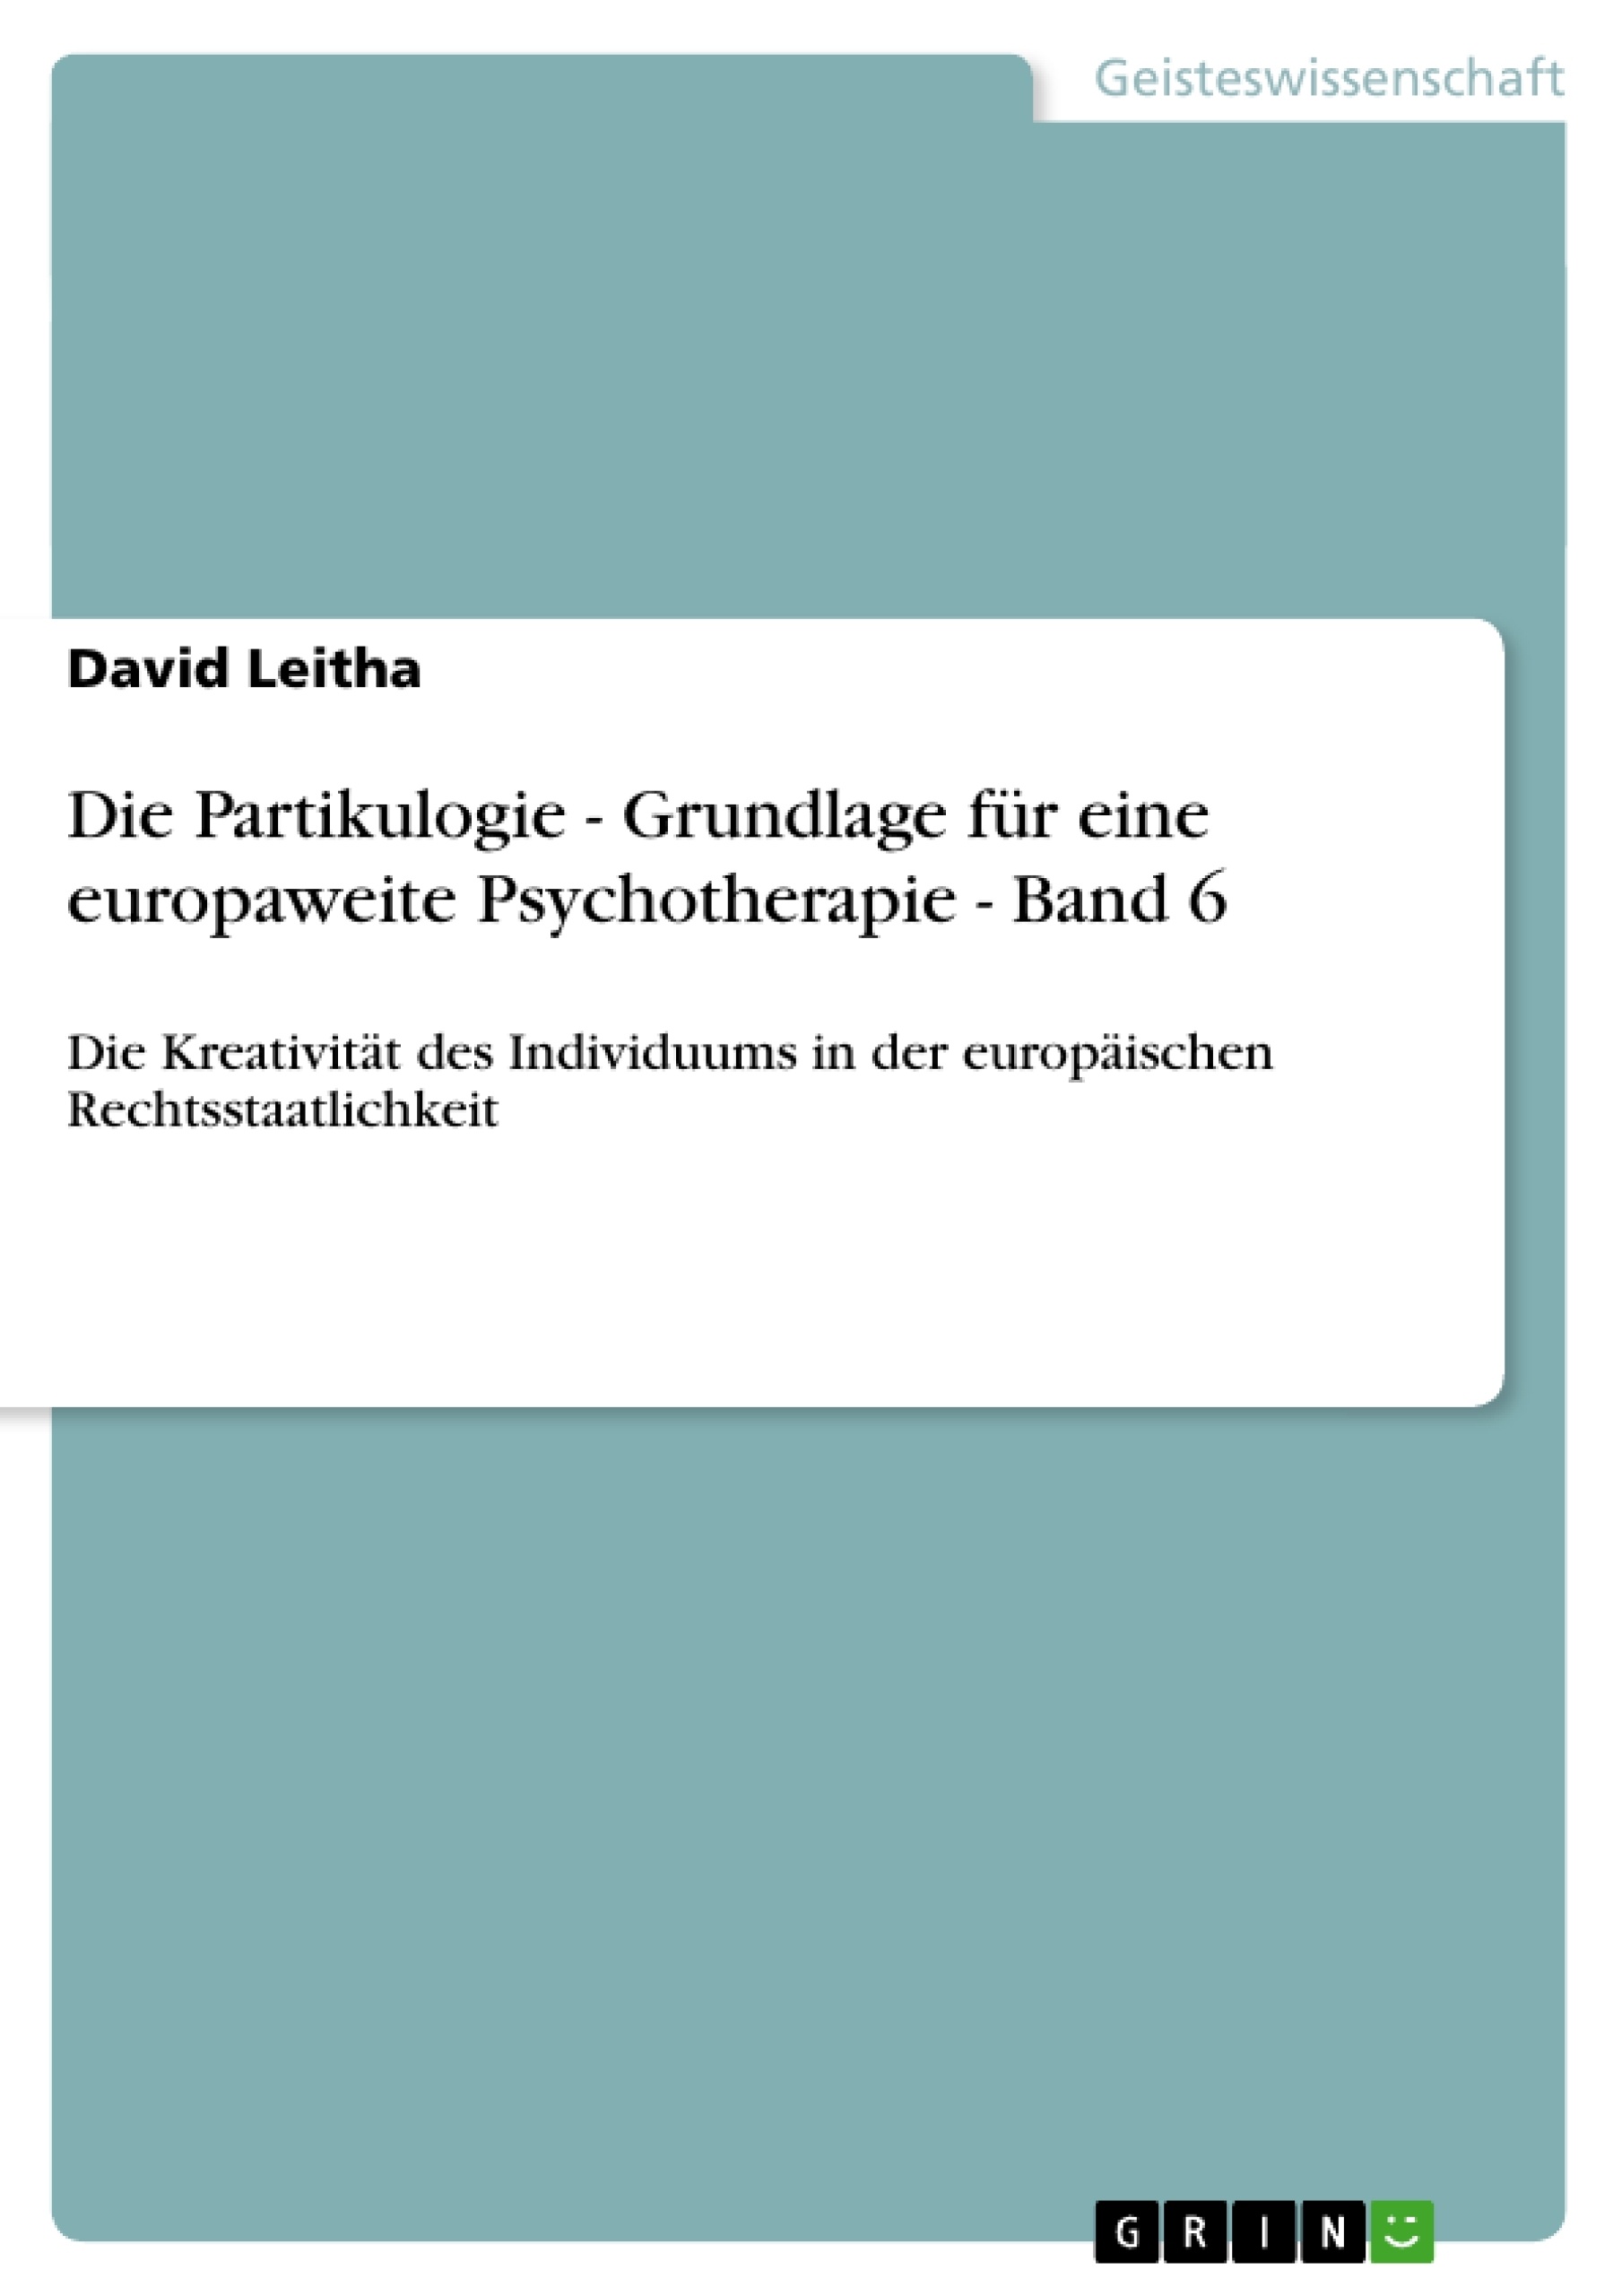 Titel: Die Partikulogie - Grundlage für eine europaweite Psychotherapie - Band 6